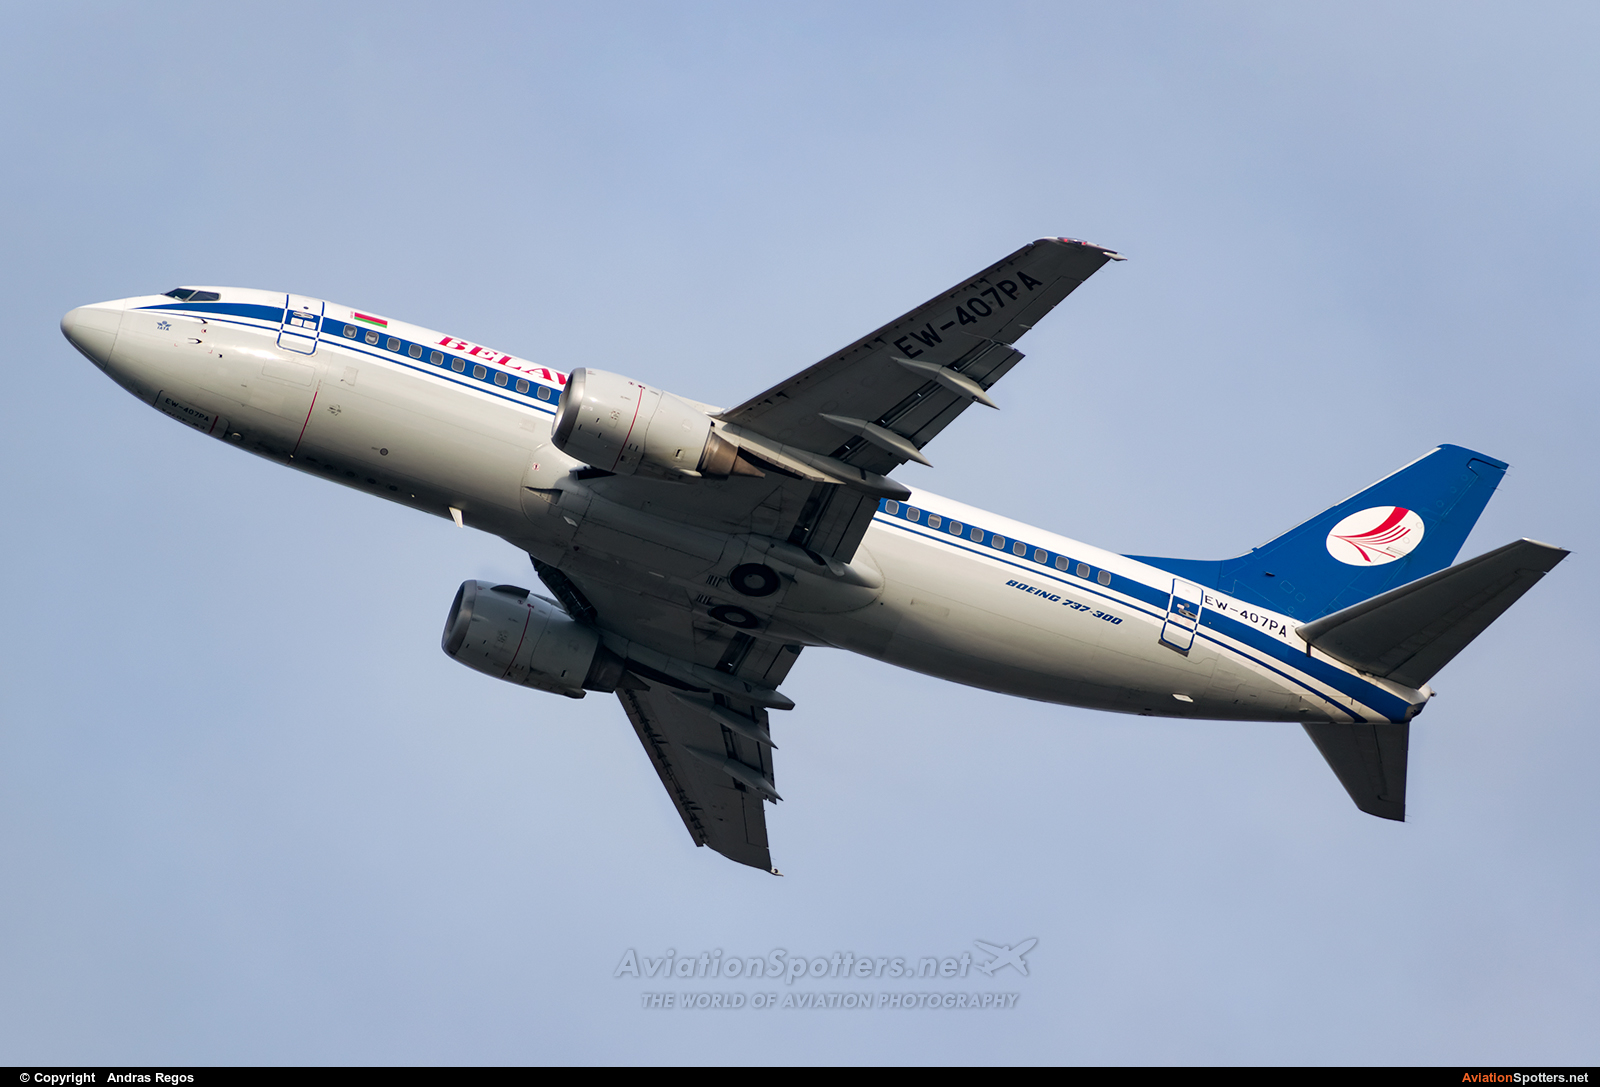 Belavia  -  737-300  (EW-407PA) By Andras Regos (regos)